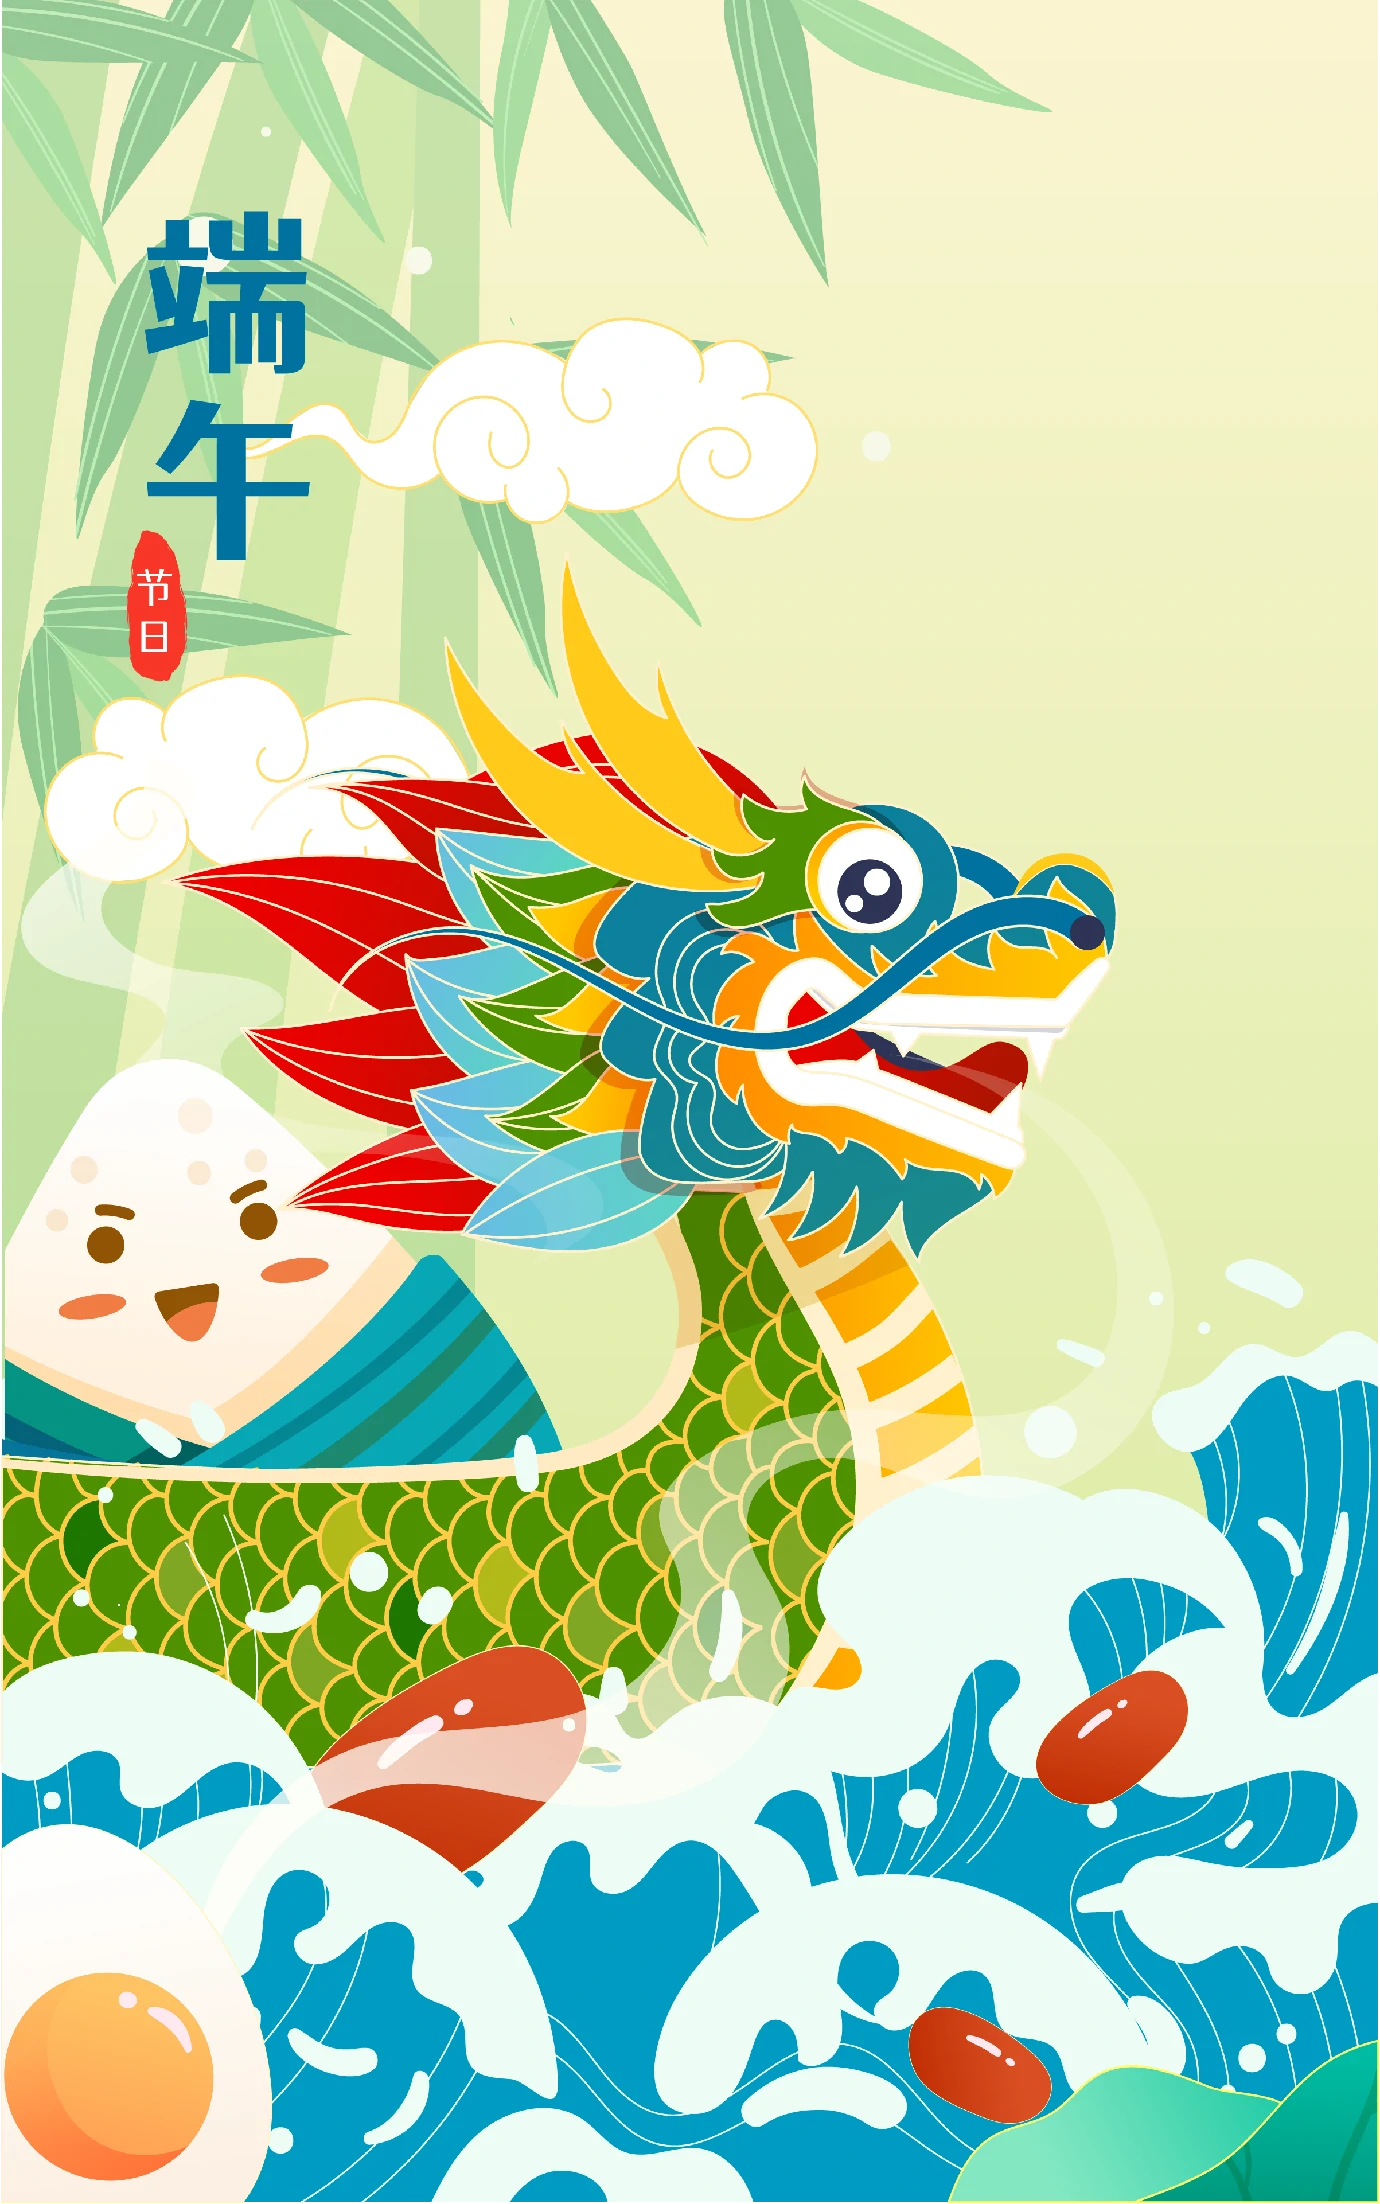 中国风中国传统节日端午节粽子龙舟屈原插画海报AI矢量设计素材【008】